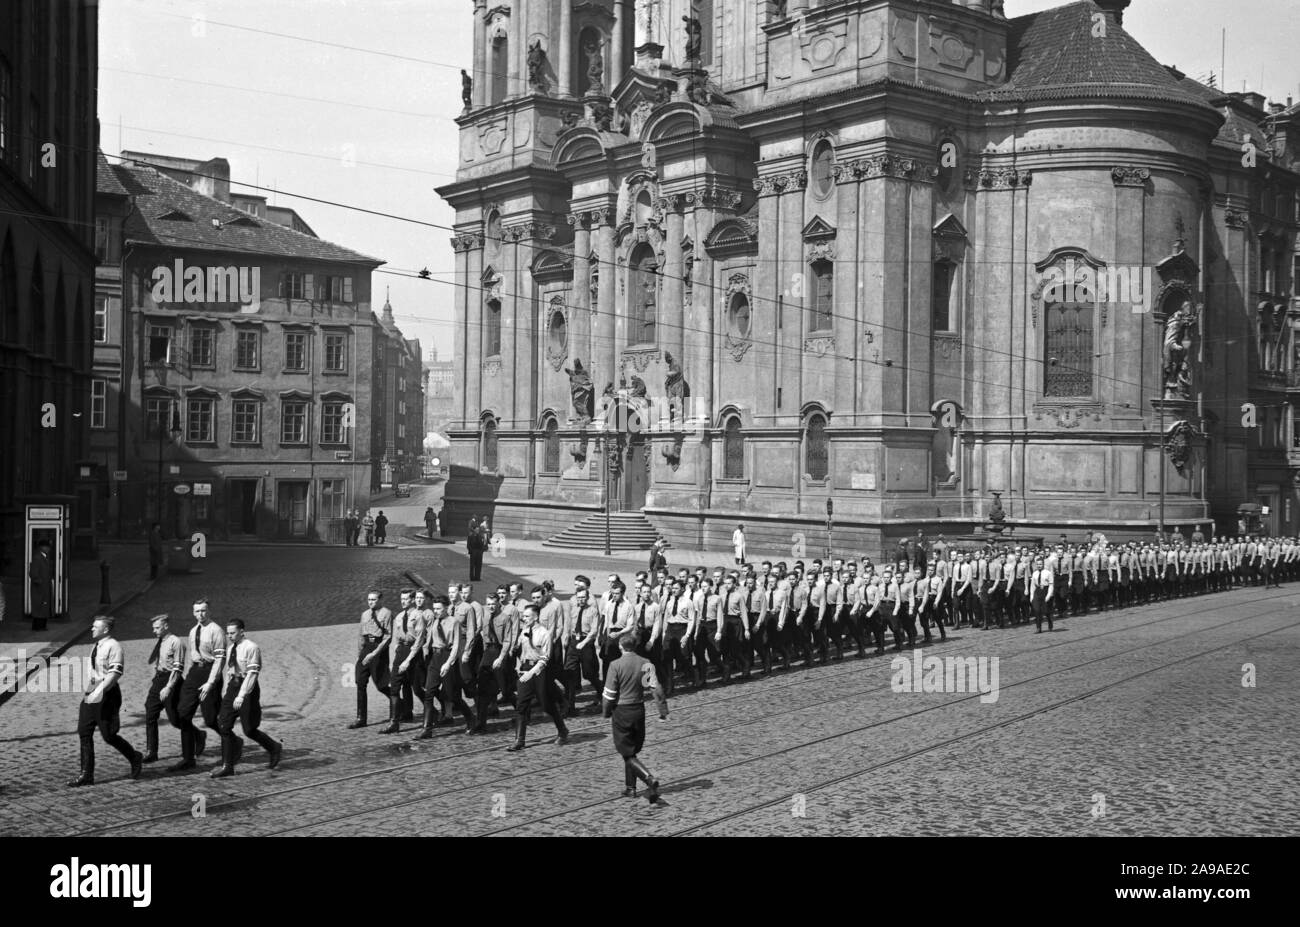 Ankunft am Altstädter Ring in rag, im Hintergrund die russische Kirche, 1930er Jahre Stock Photo